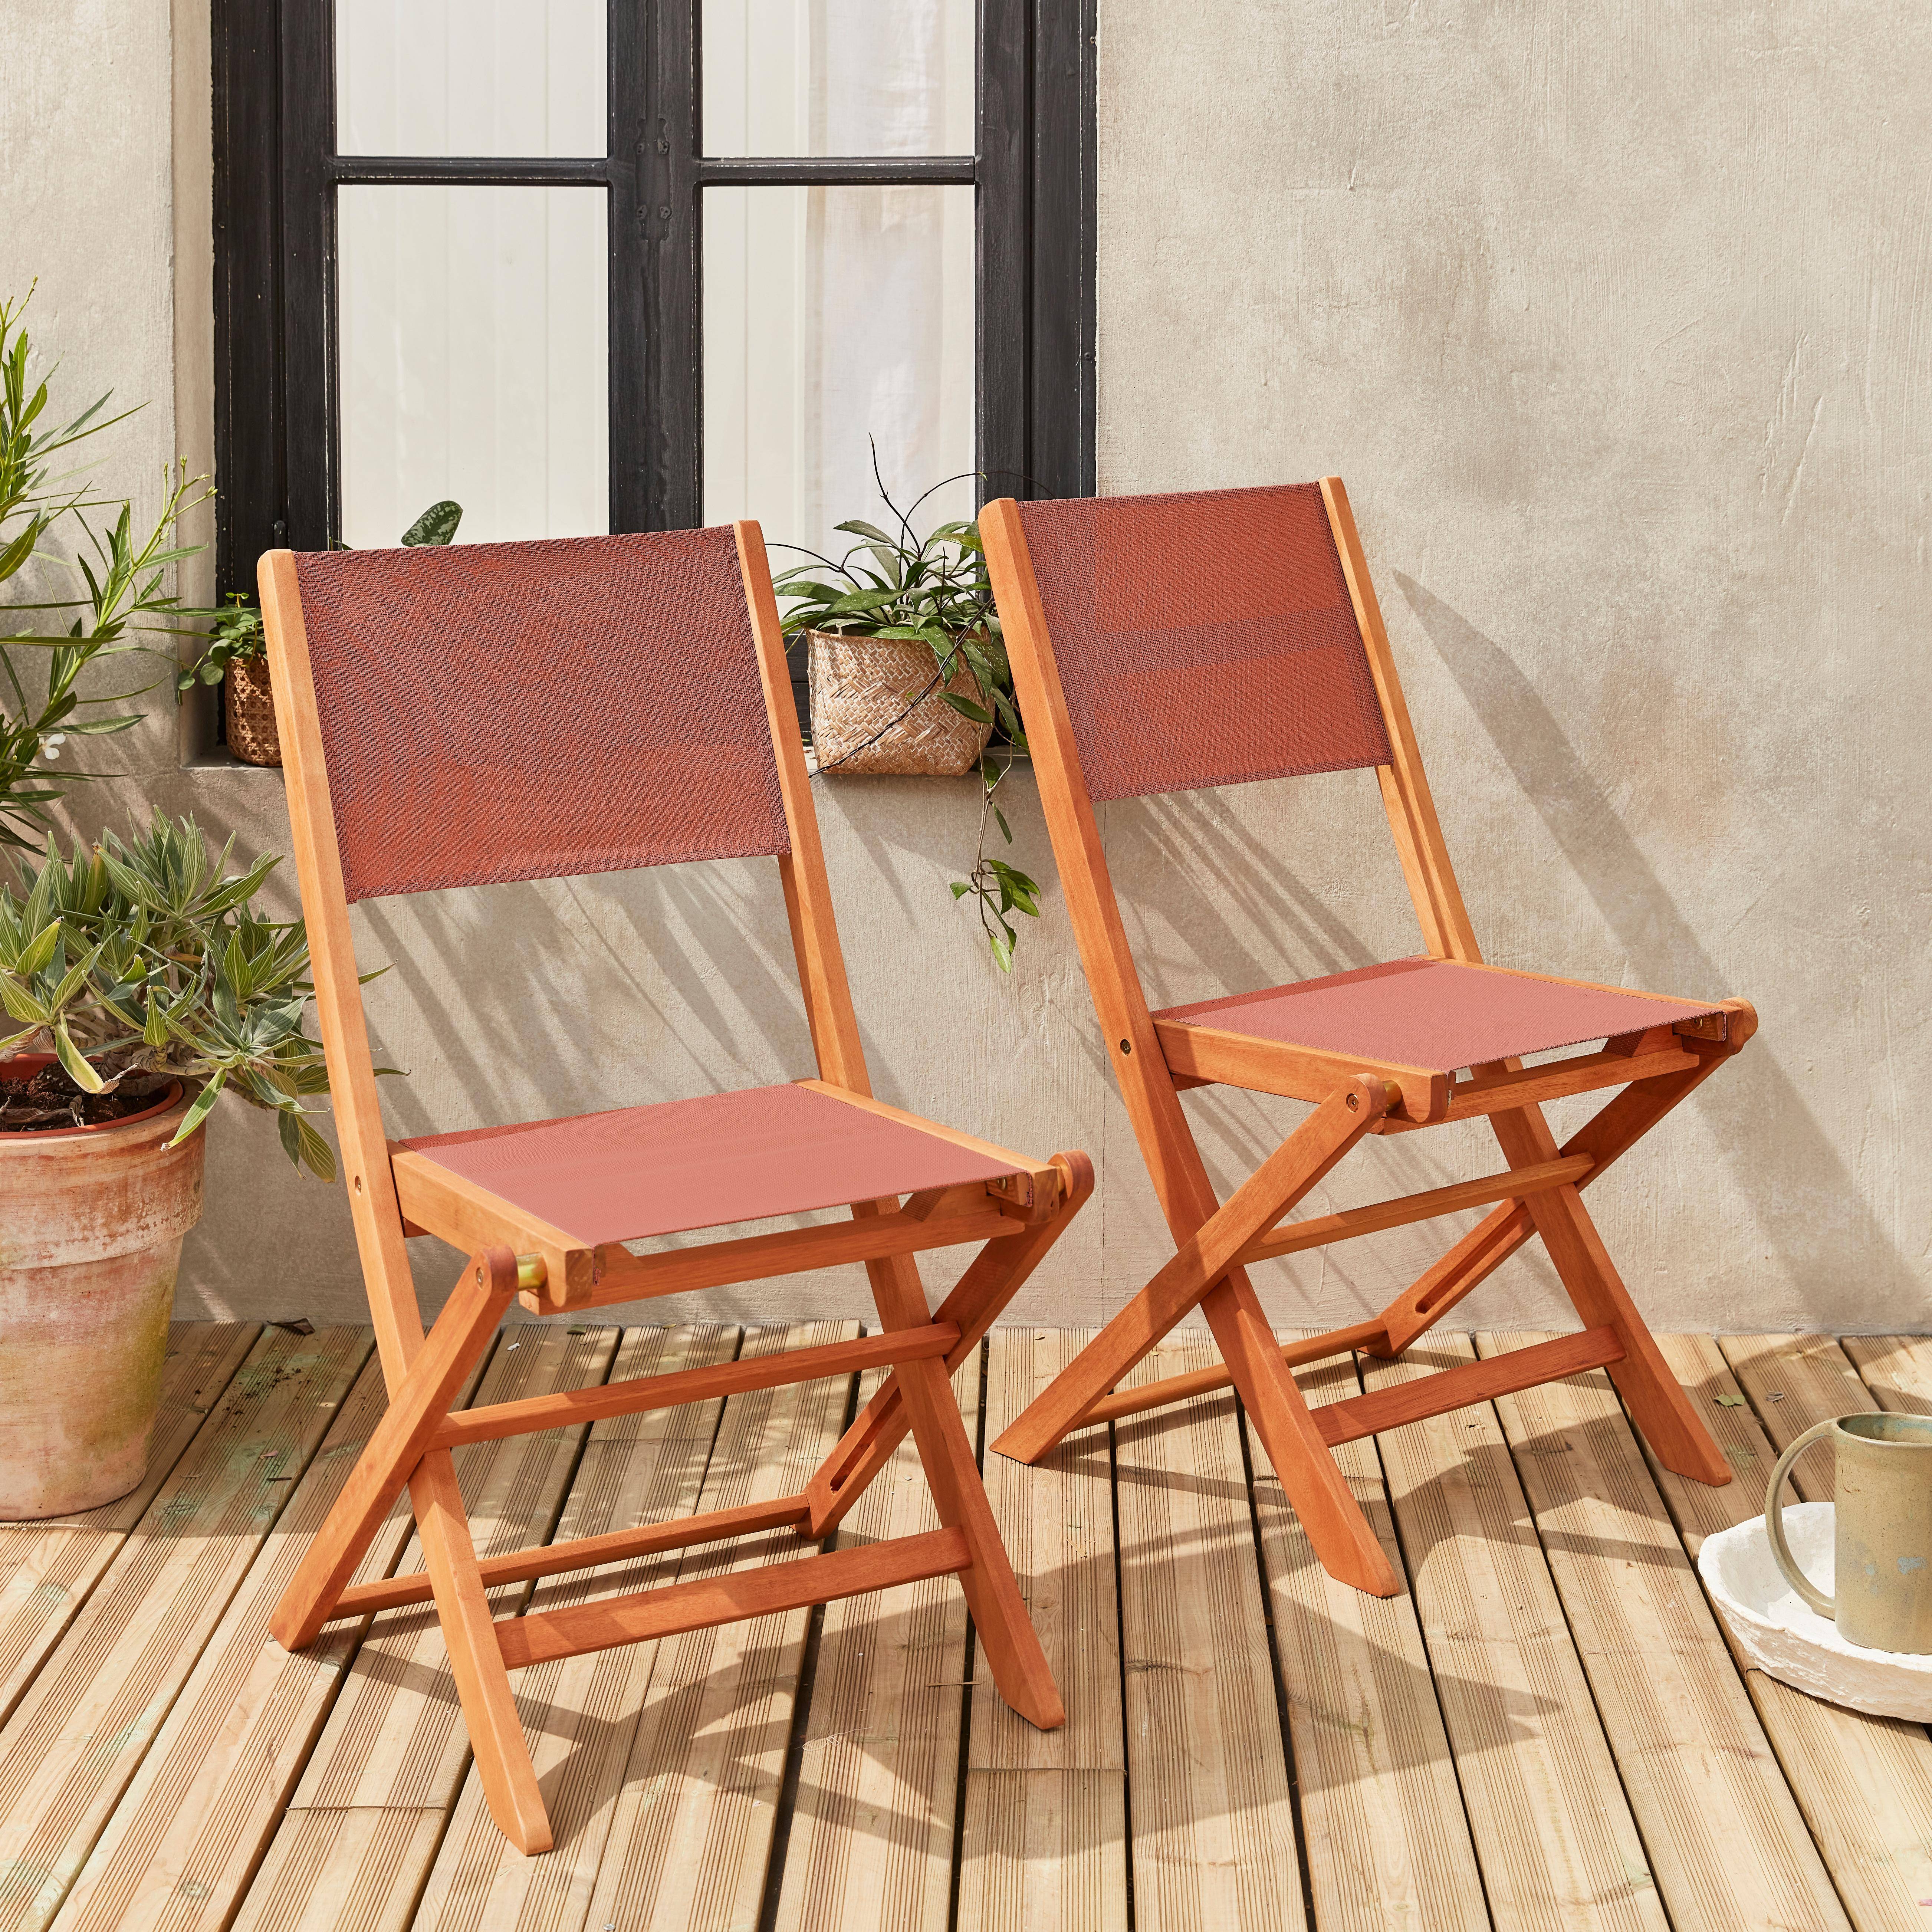 Gartenstühle aus Holz und Textilene - Almeria terrakotta - 2 Klappstühle aus geöltem FSC Eukalyptusholz und Textilene Photo1